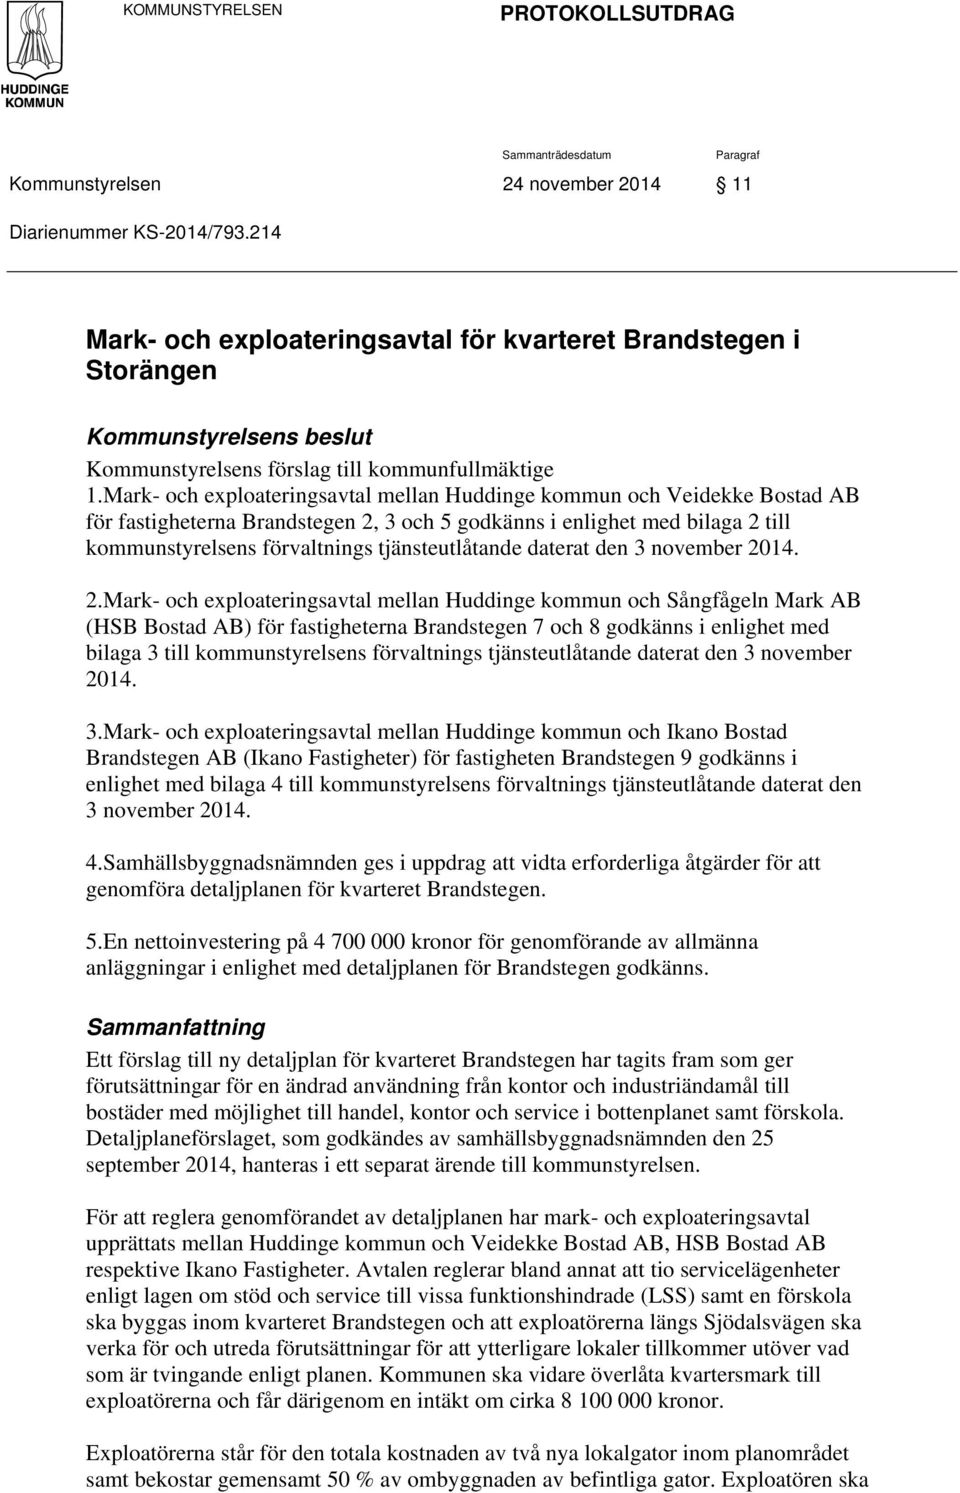 Mark- och exploateringsavtal mellan Huddinge kommun och Veidekke Bostad AB för fastigheterna Brandstegen 2, 3 och 5 godkänns i enlighet med bilaga 2 till kommunstyrelsens förvaltnings